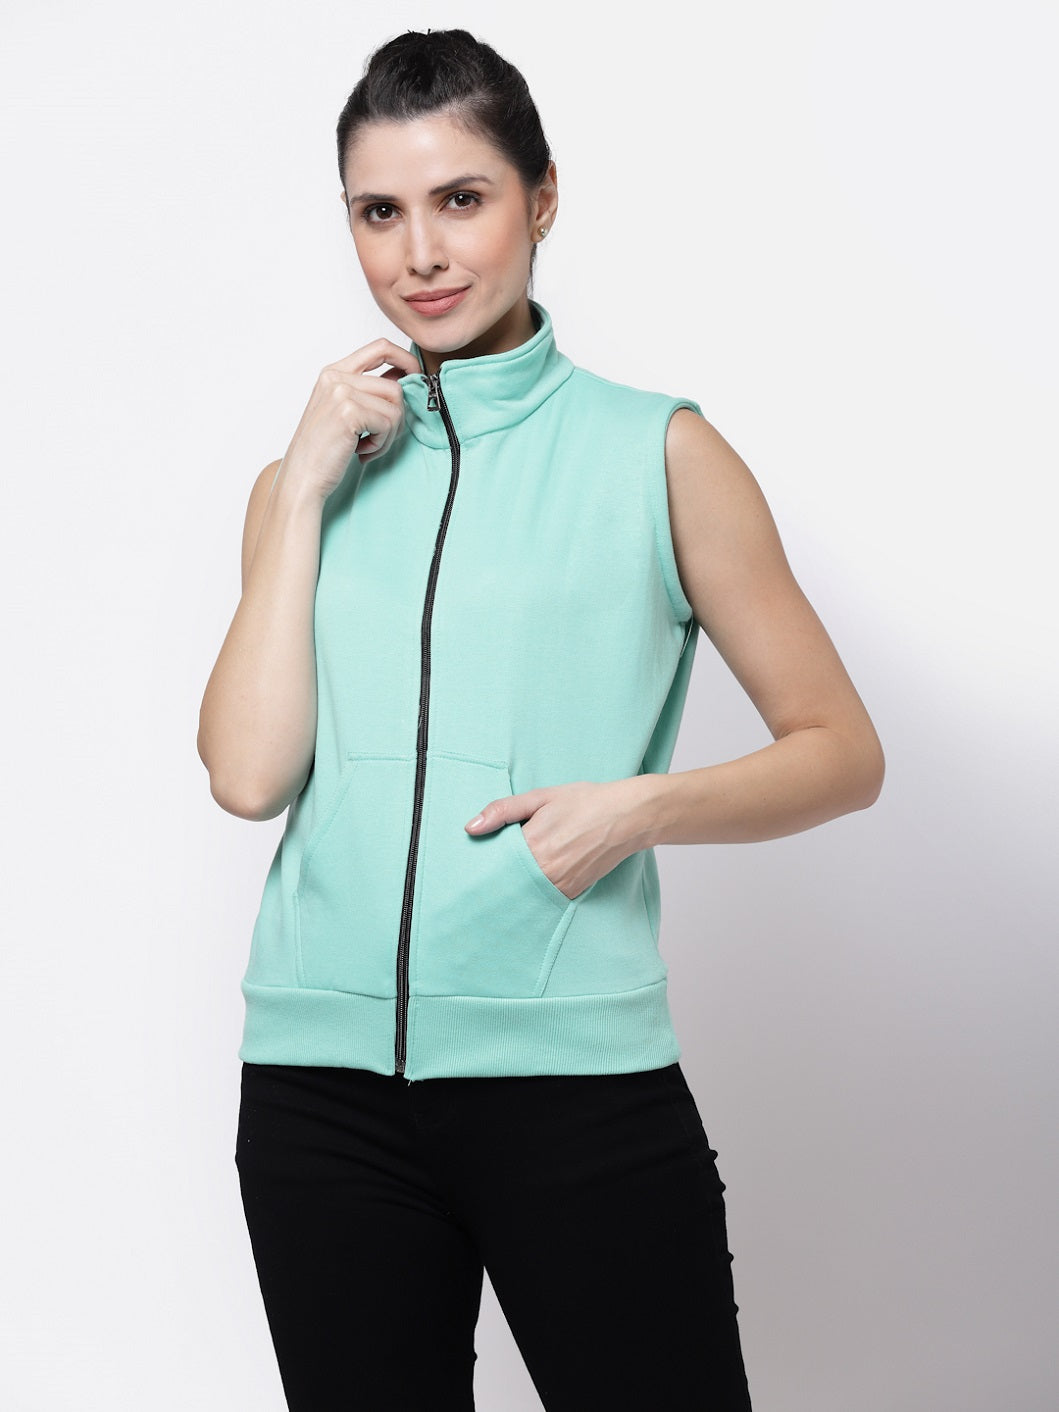 UZARUS Women's Half Sleeves Cotton Fleece Premium Jacket